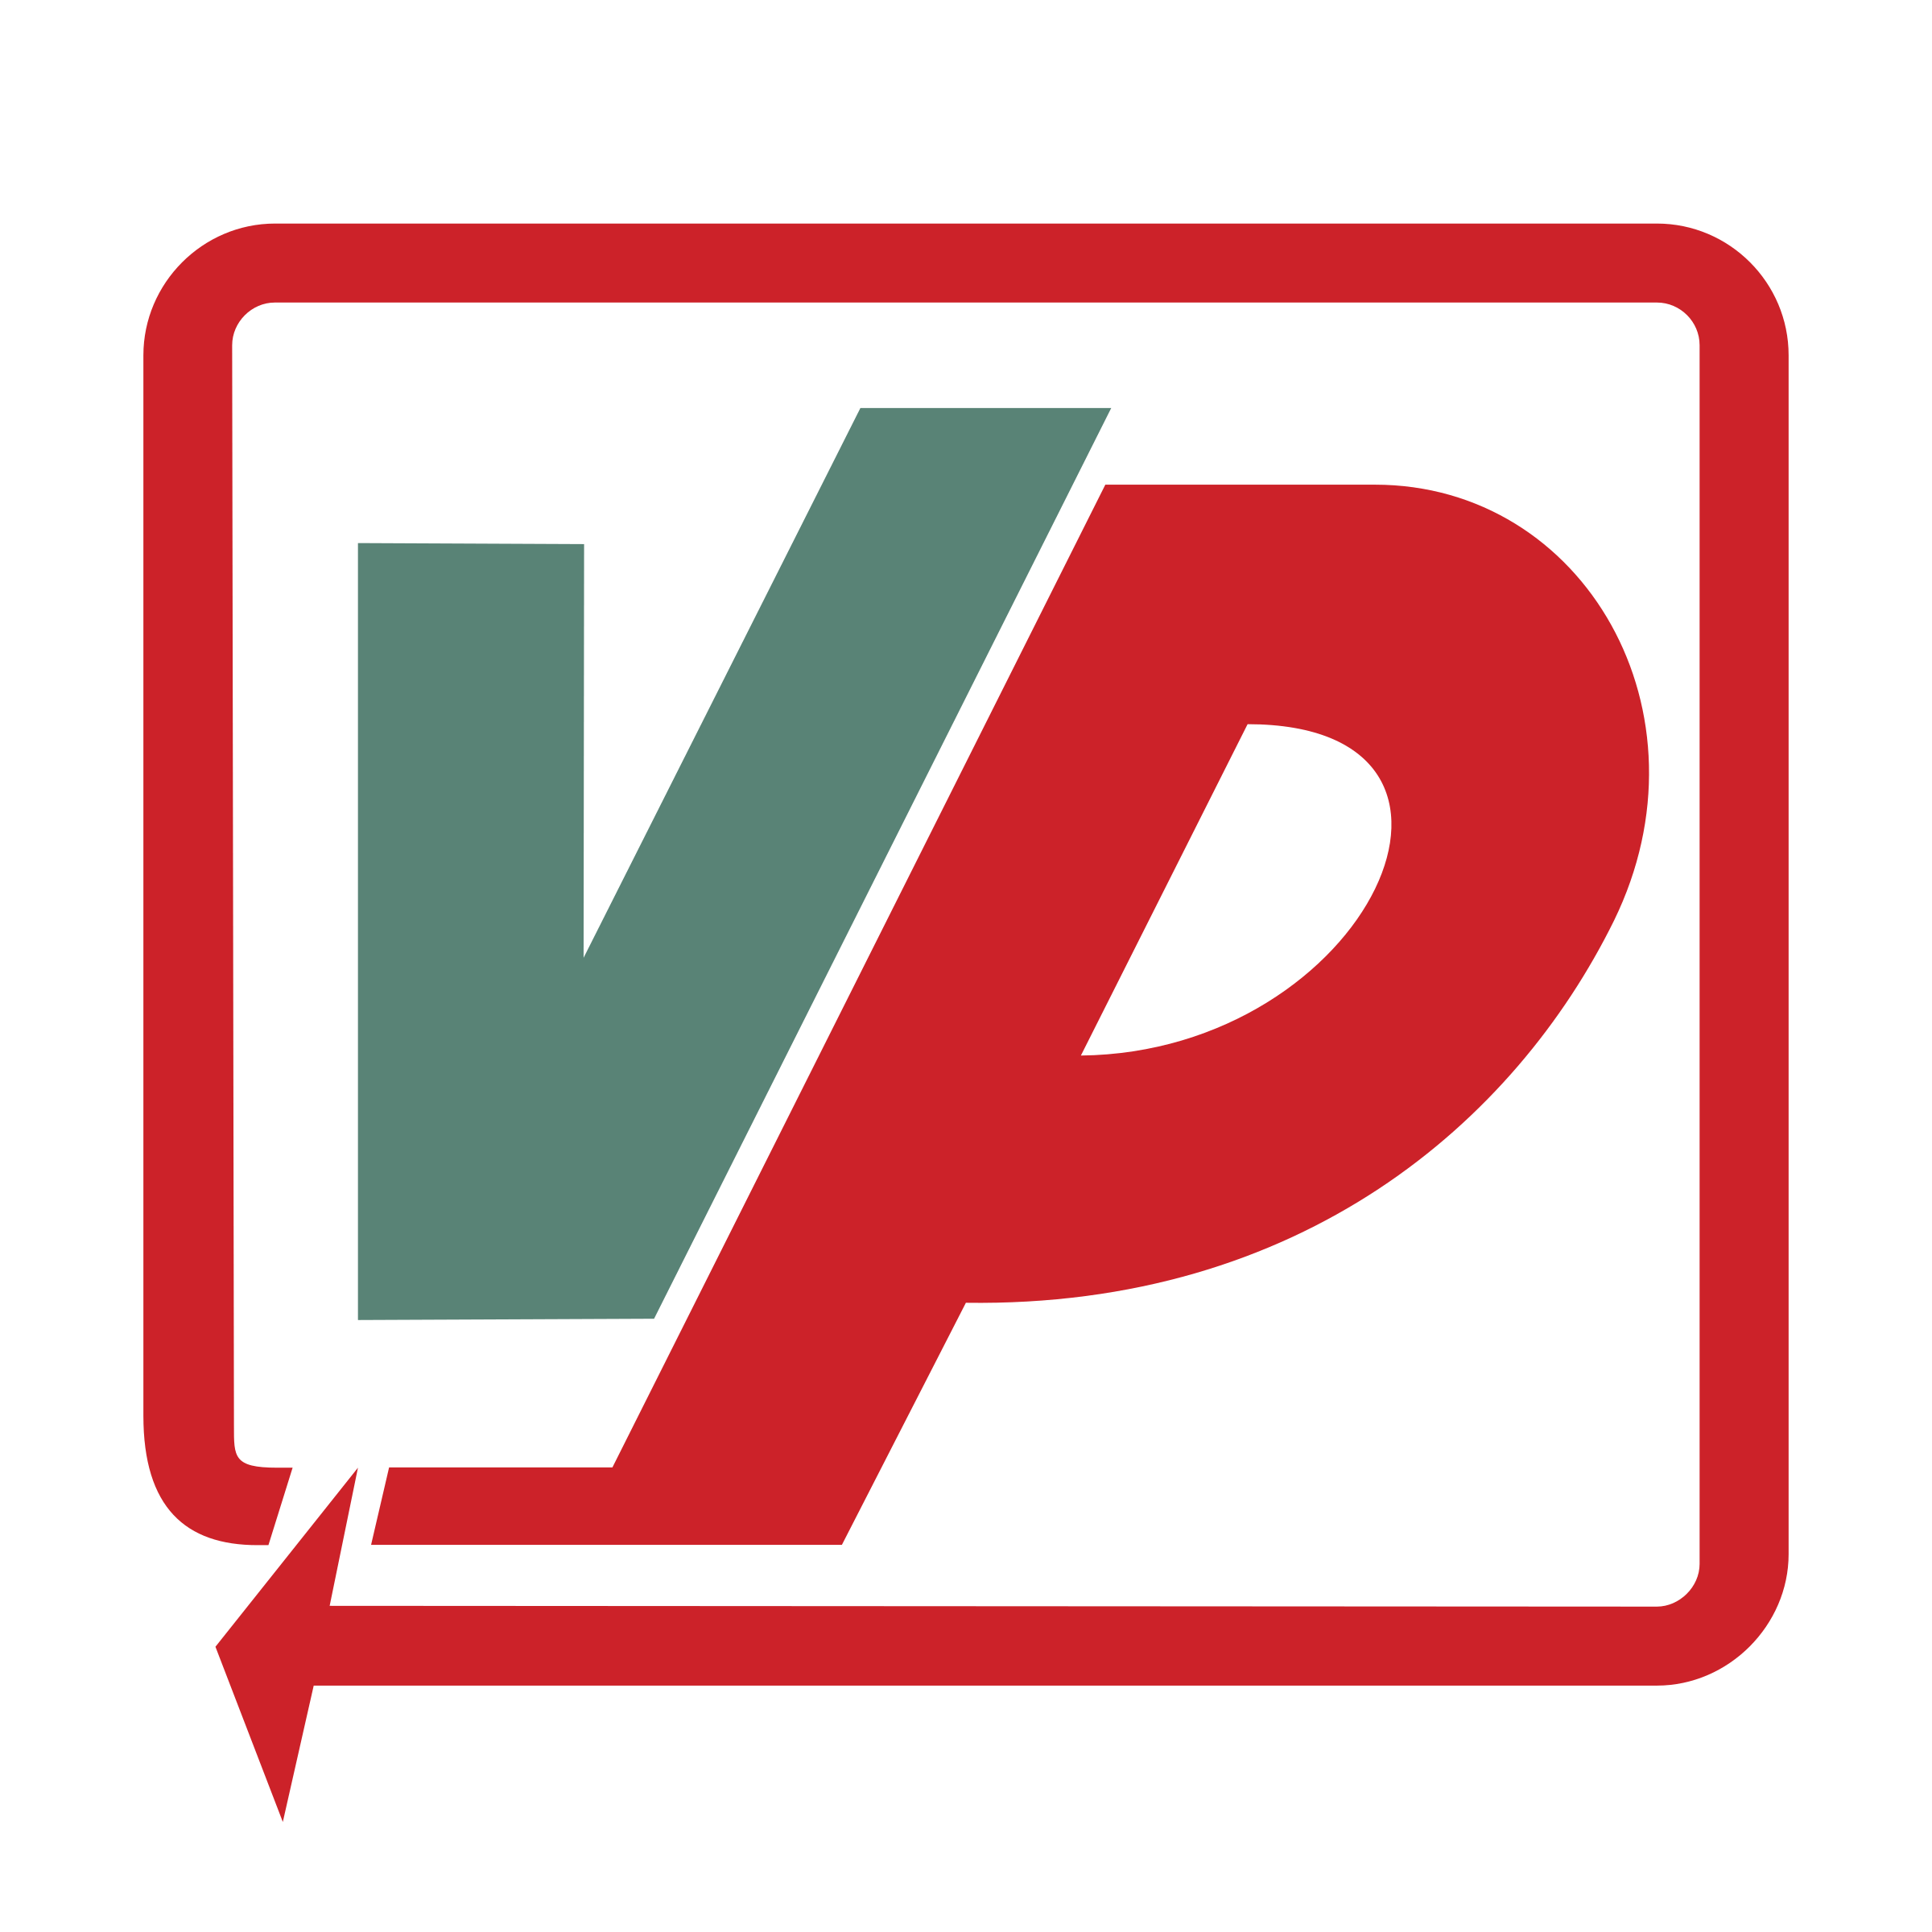 VP Logo - VP Logo PNG Transparent & SVG Vector - Freebie Supply